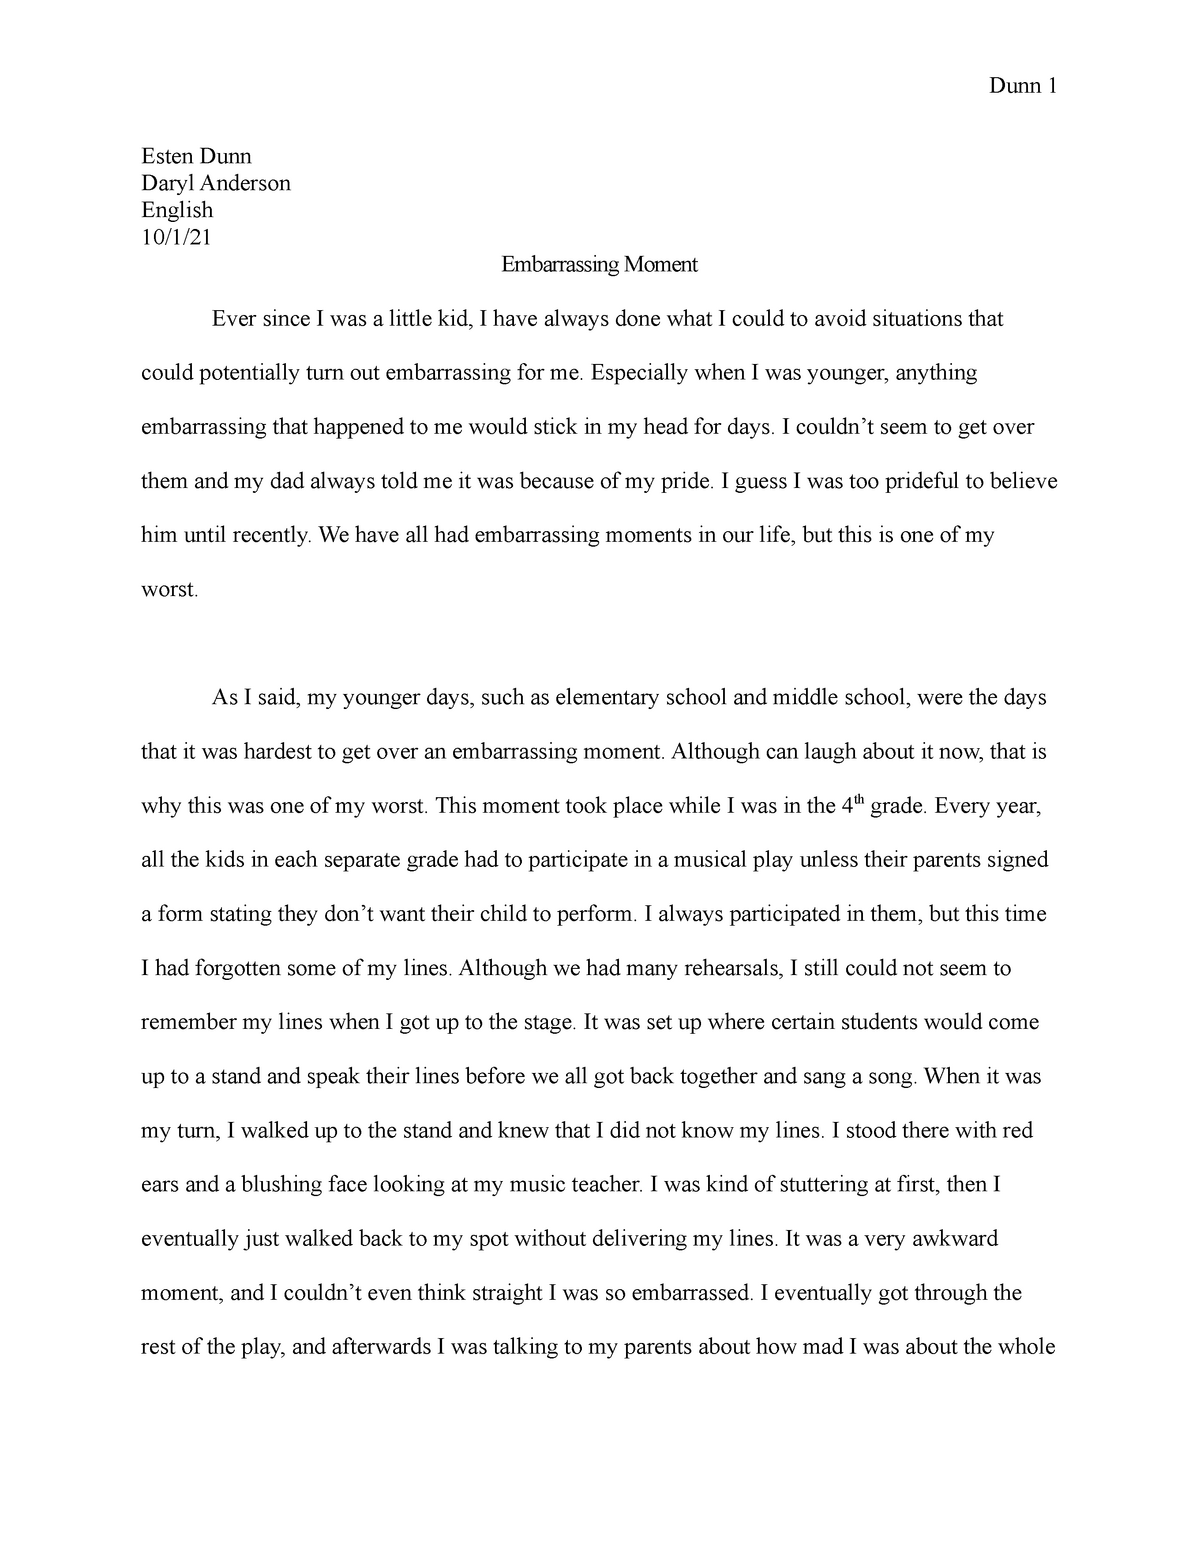 my most embarrassing moment short essay